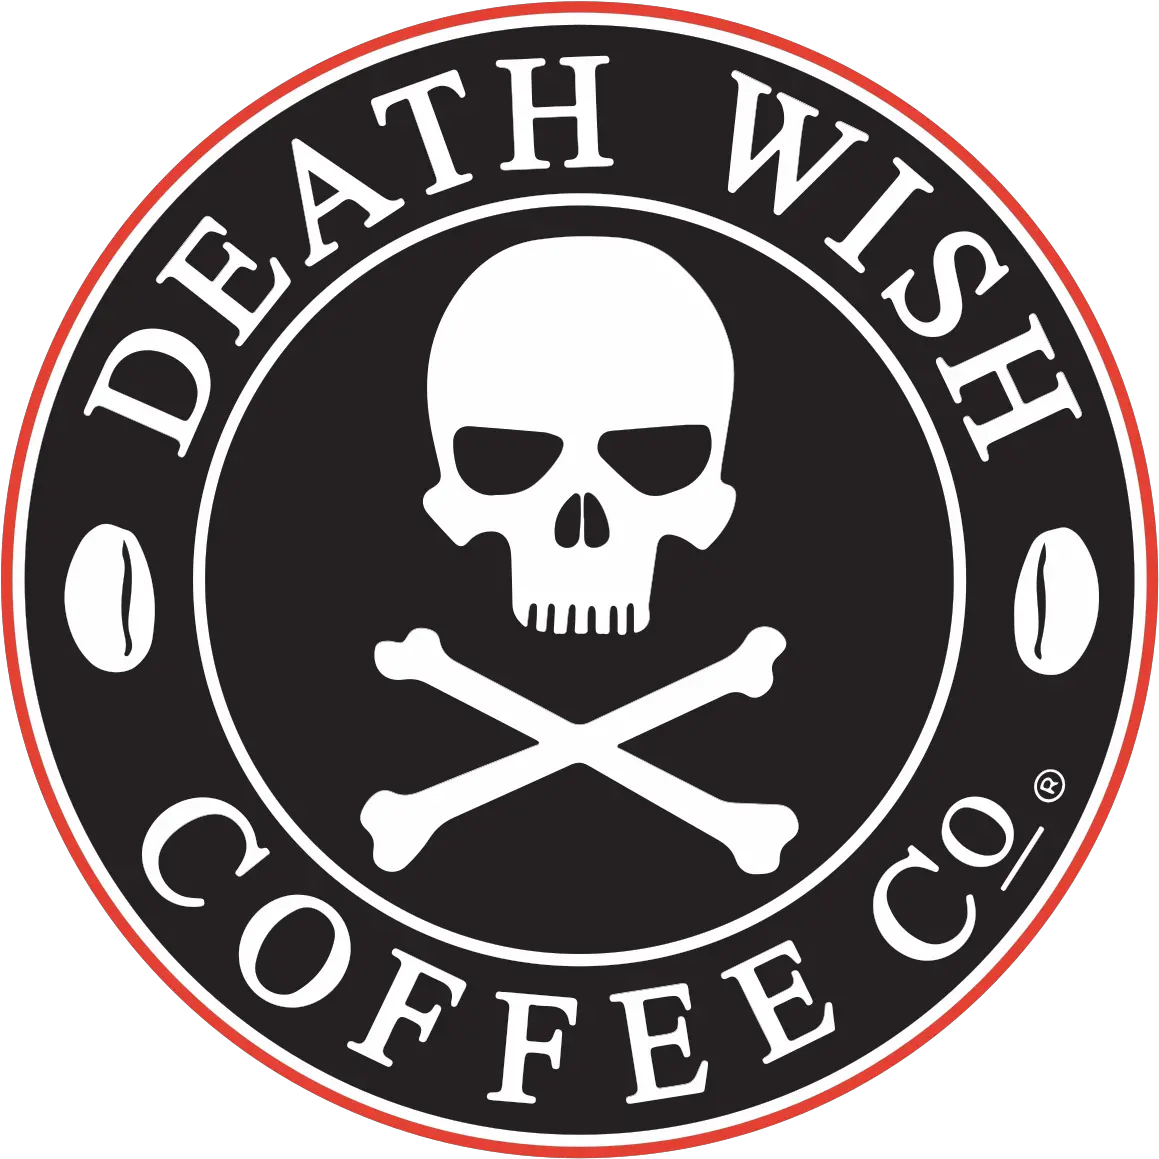 Death Wish Coffee Wikipedia Death Wish Coffee Png Wish Logo Png